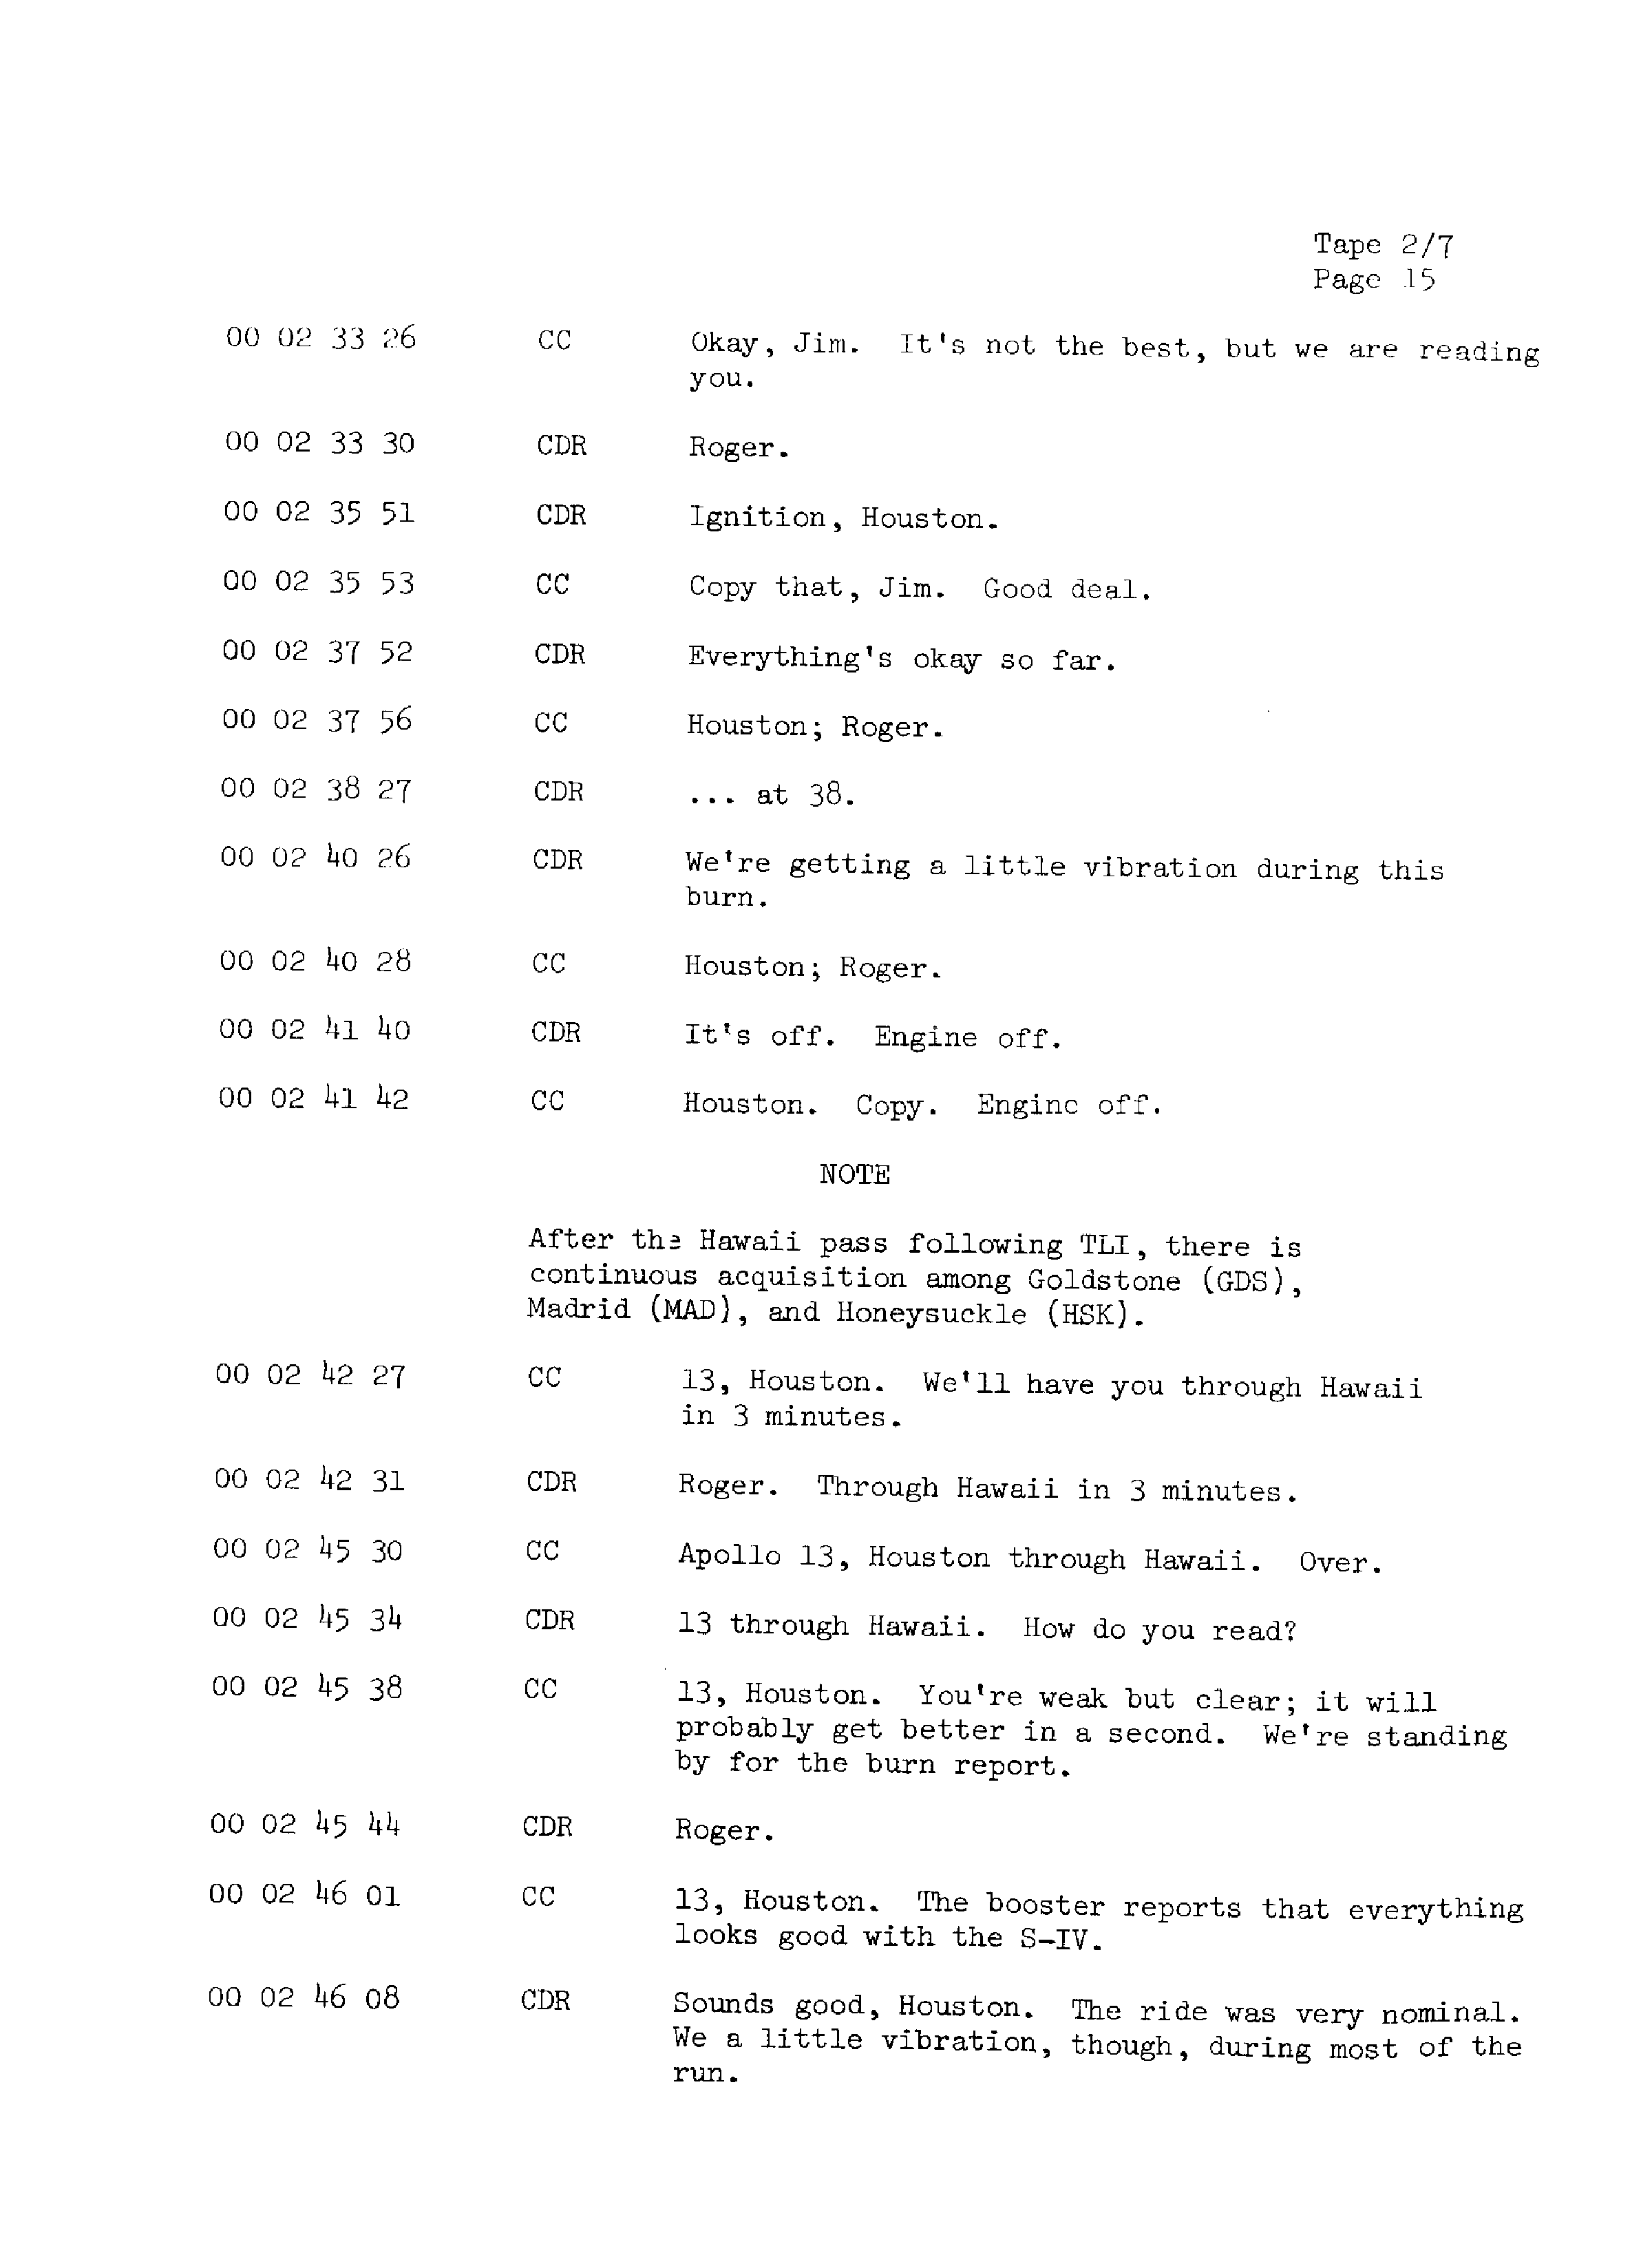 Page 22 of Apollo 13’s original transcript